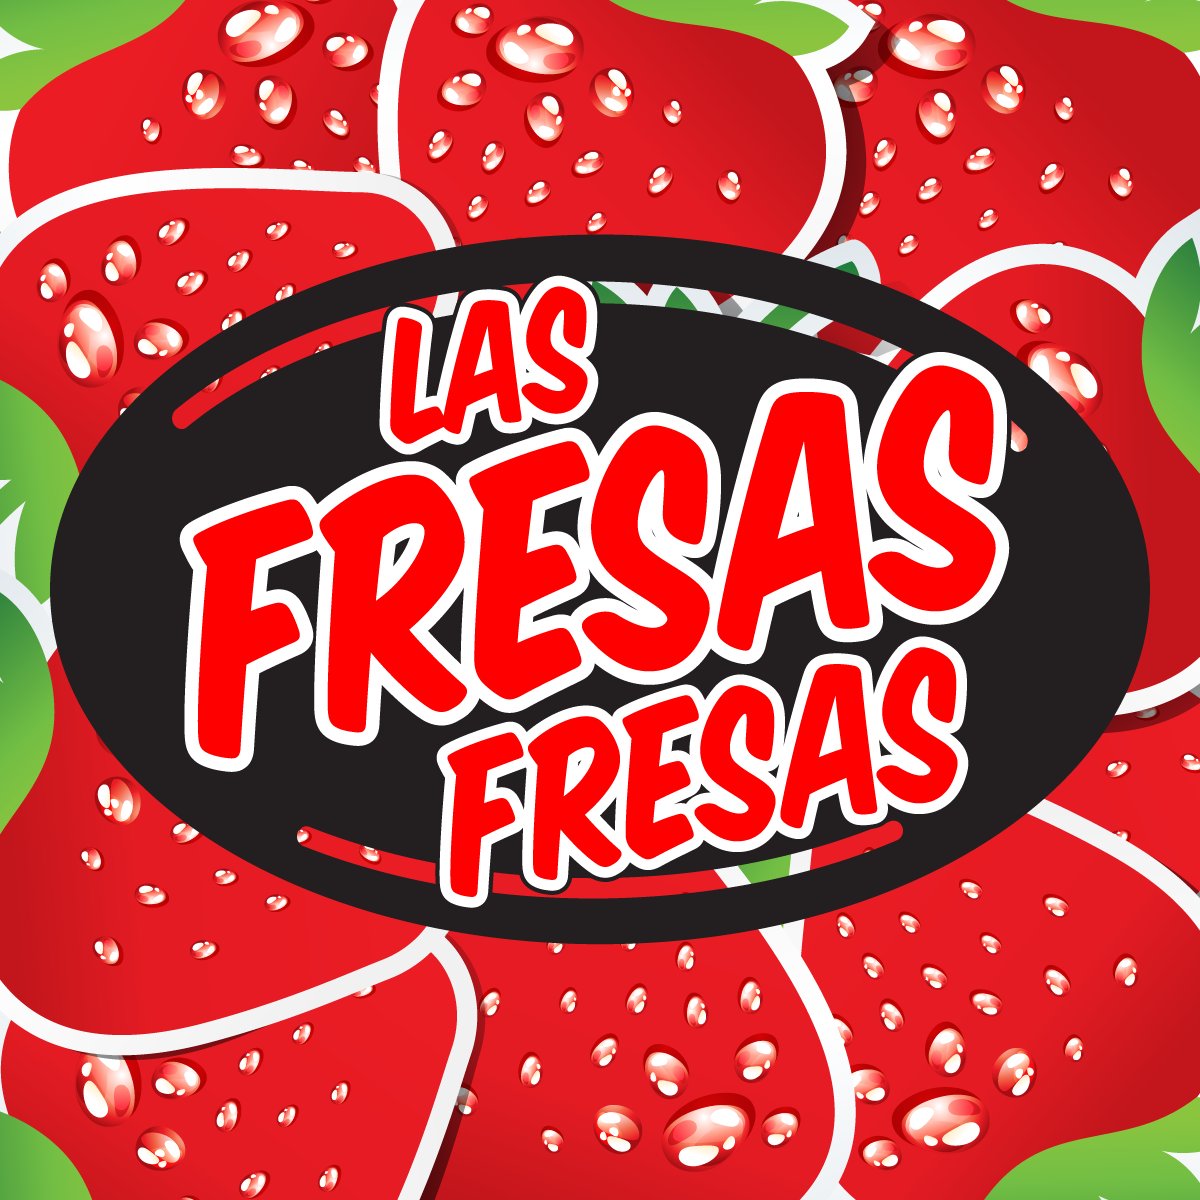 Las mejores fresas con crema al norte del Estado de México. Seis años deleitando paladares con un postre, realizado bajo las más estrictas normas de higiene.